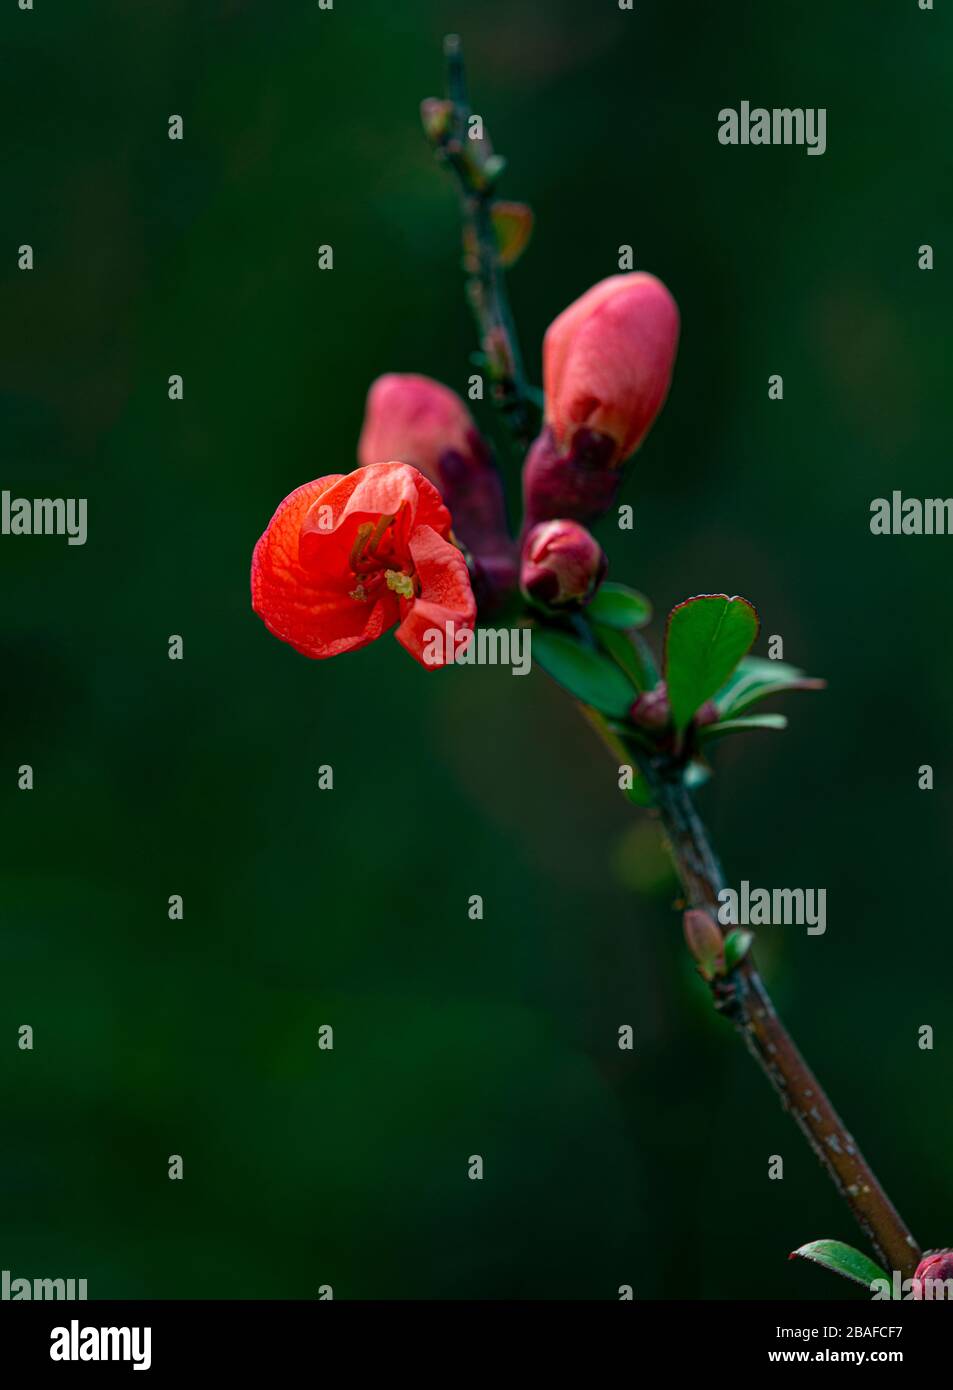 Vertikale Nahaufnahme einer roten Blume und Knospen auf einem verschwommenen grünen Hintergrund. Stockfoto